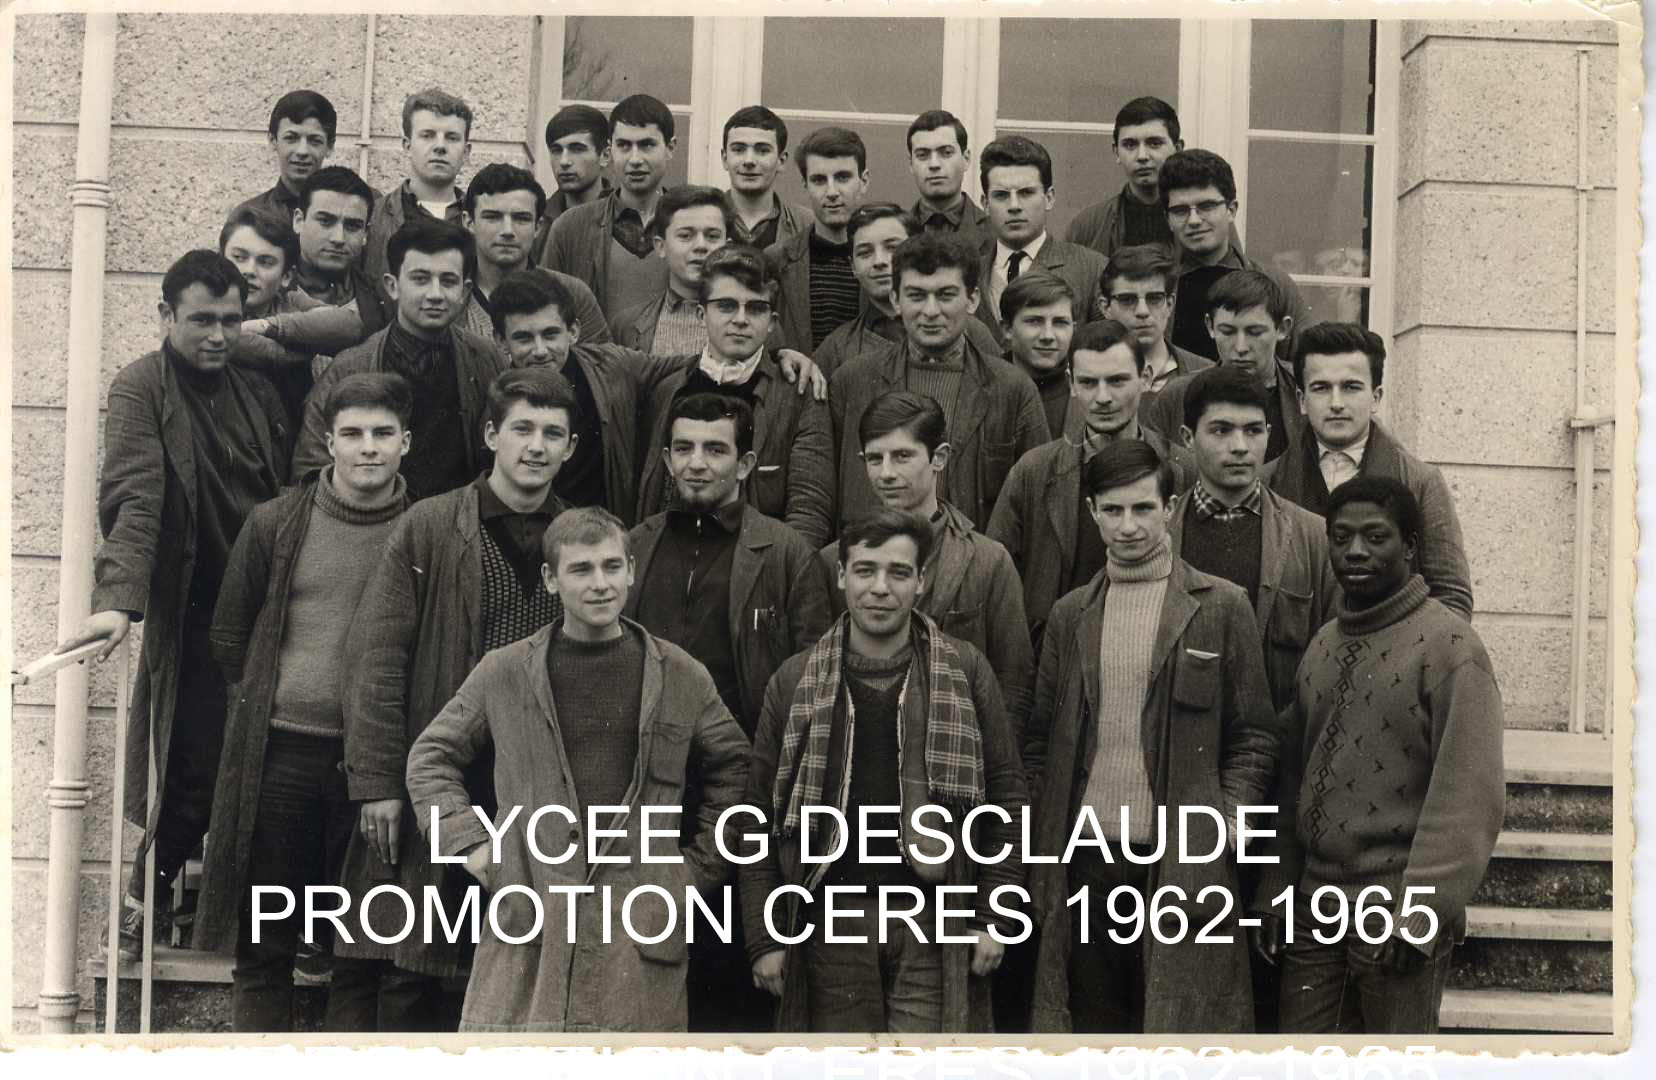 B lycee g desclaude promotion ceres1962 1965 texte